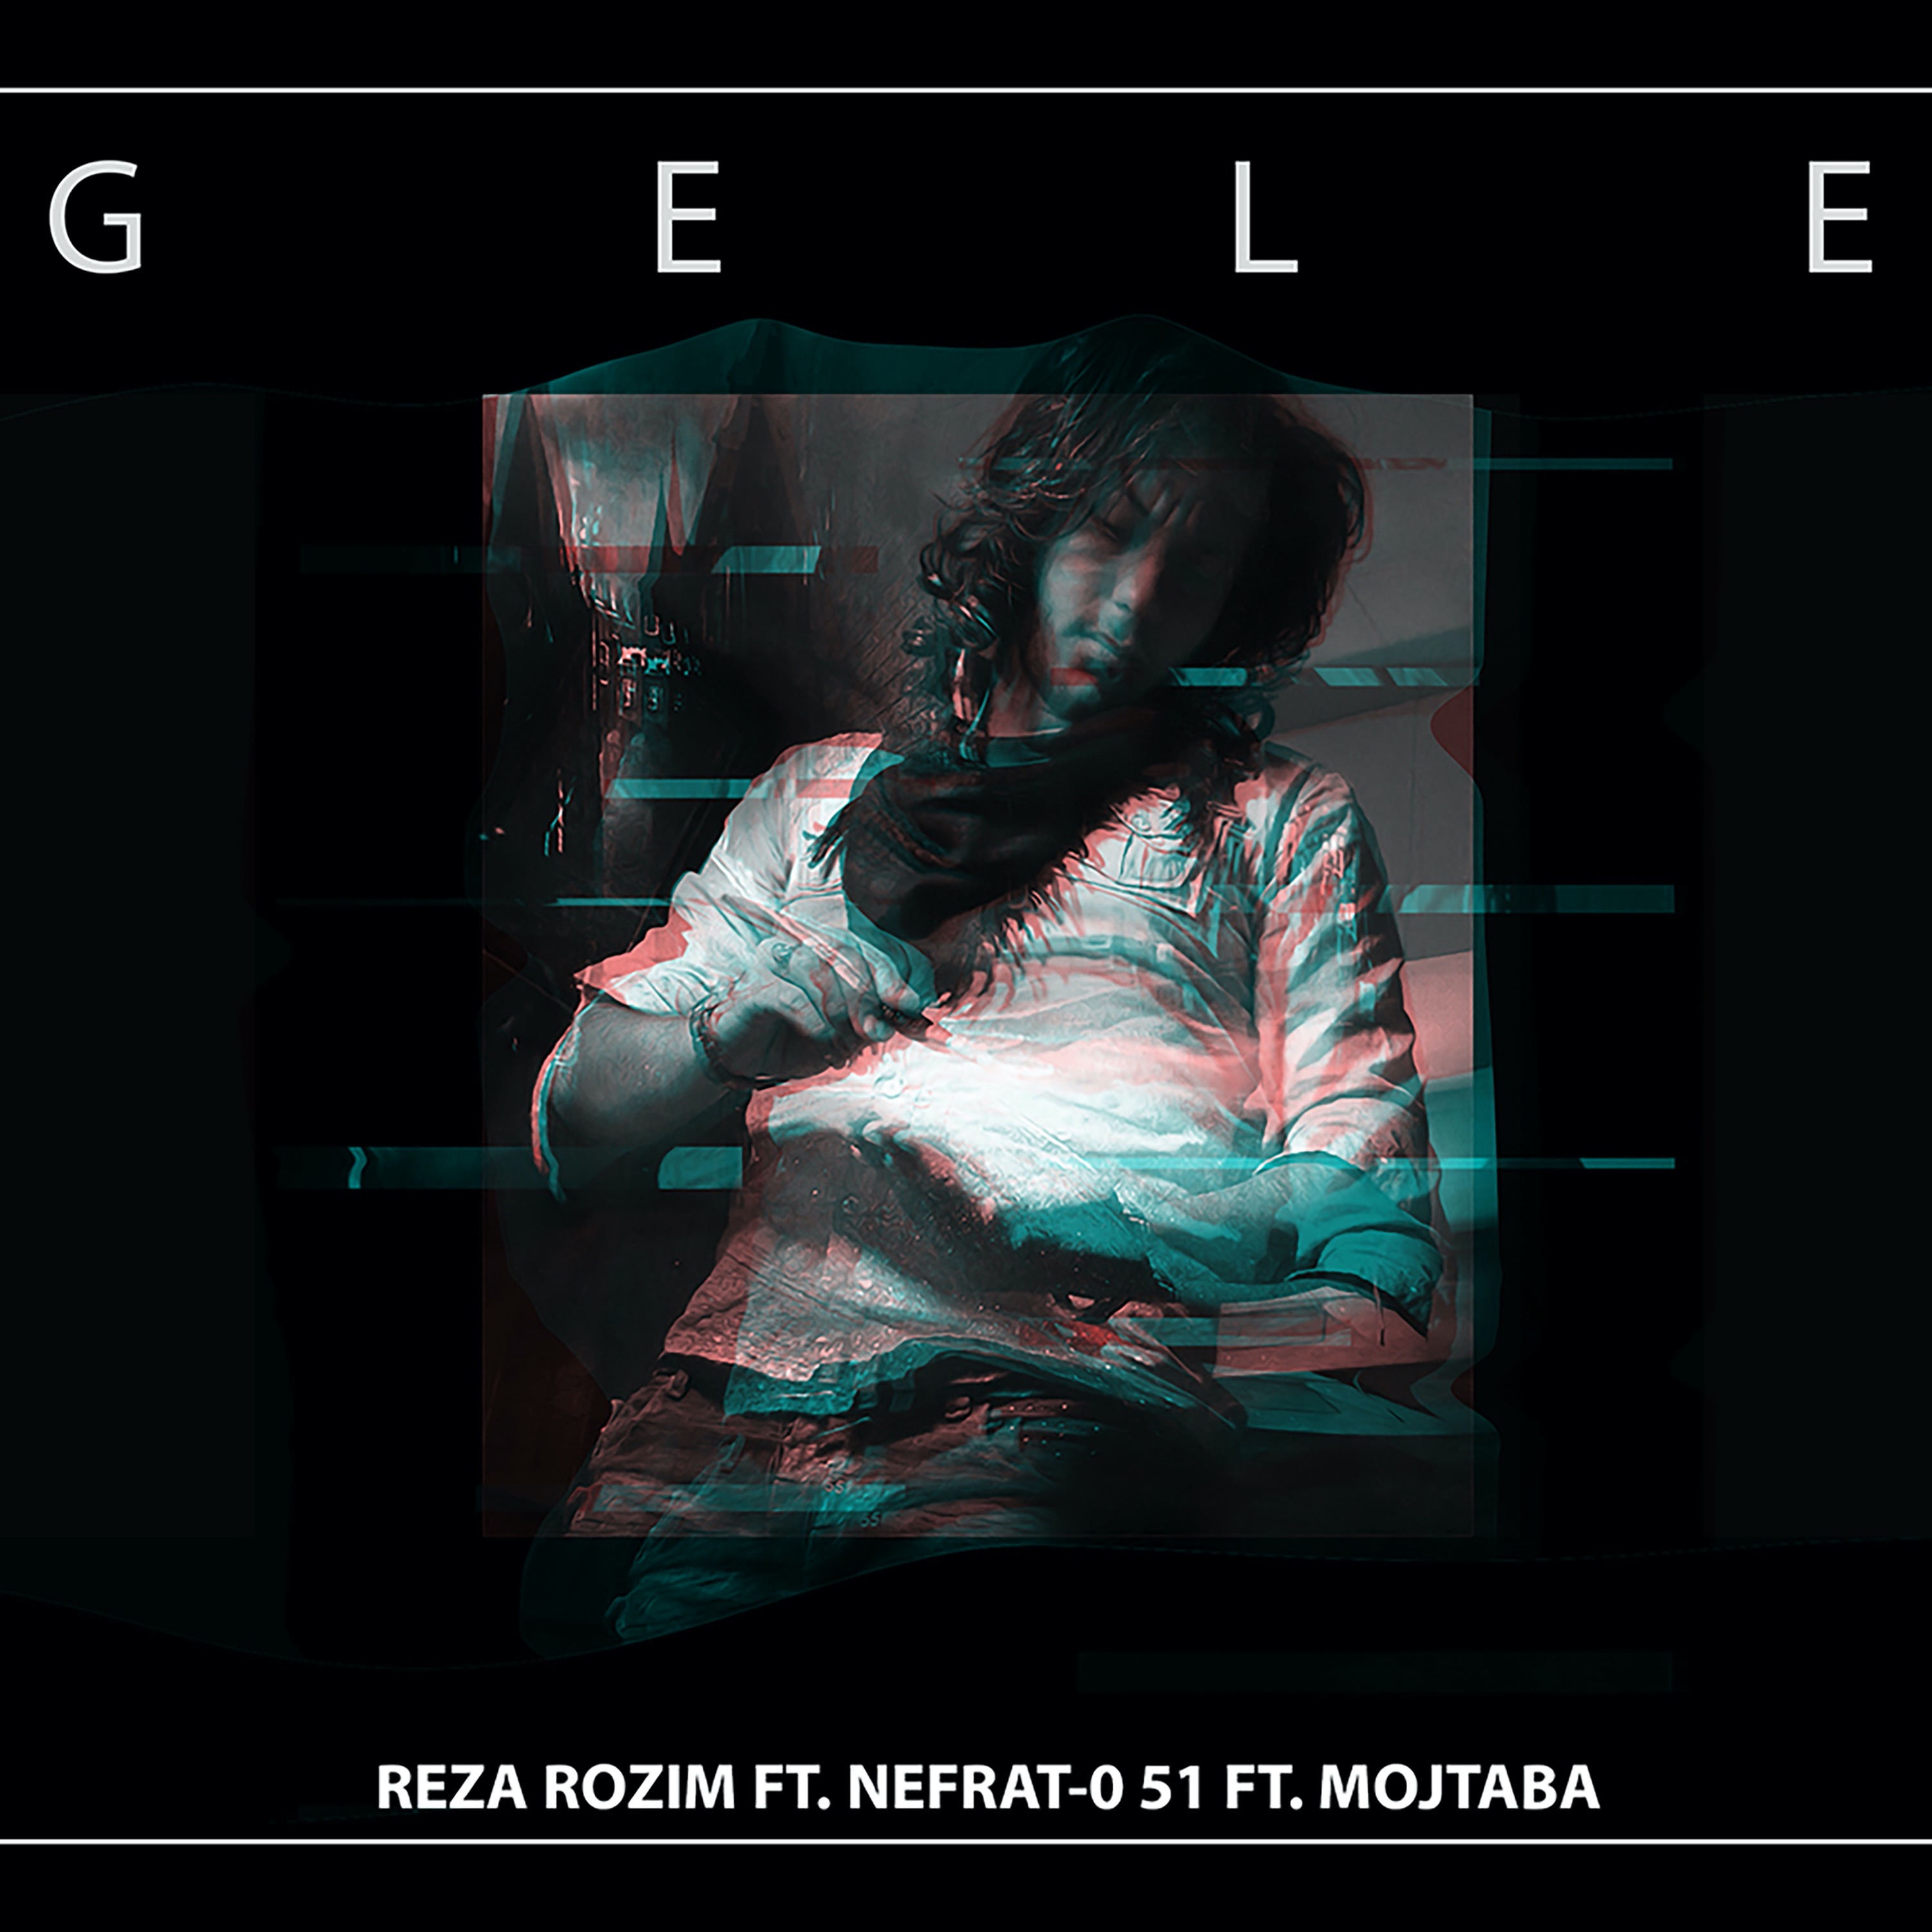  دانلود آهنگ جدید رُظیم - گله | Download New Music By Reza Rozim - Gele (feat. Nefrat 051 & Mojtaba)